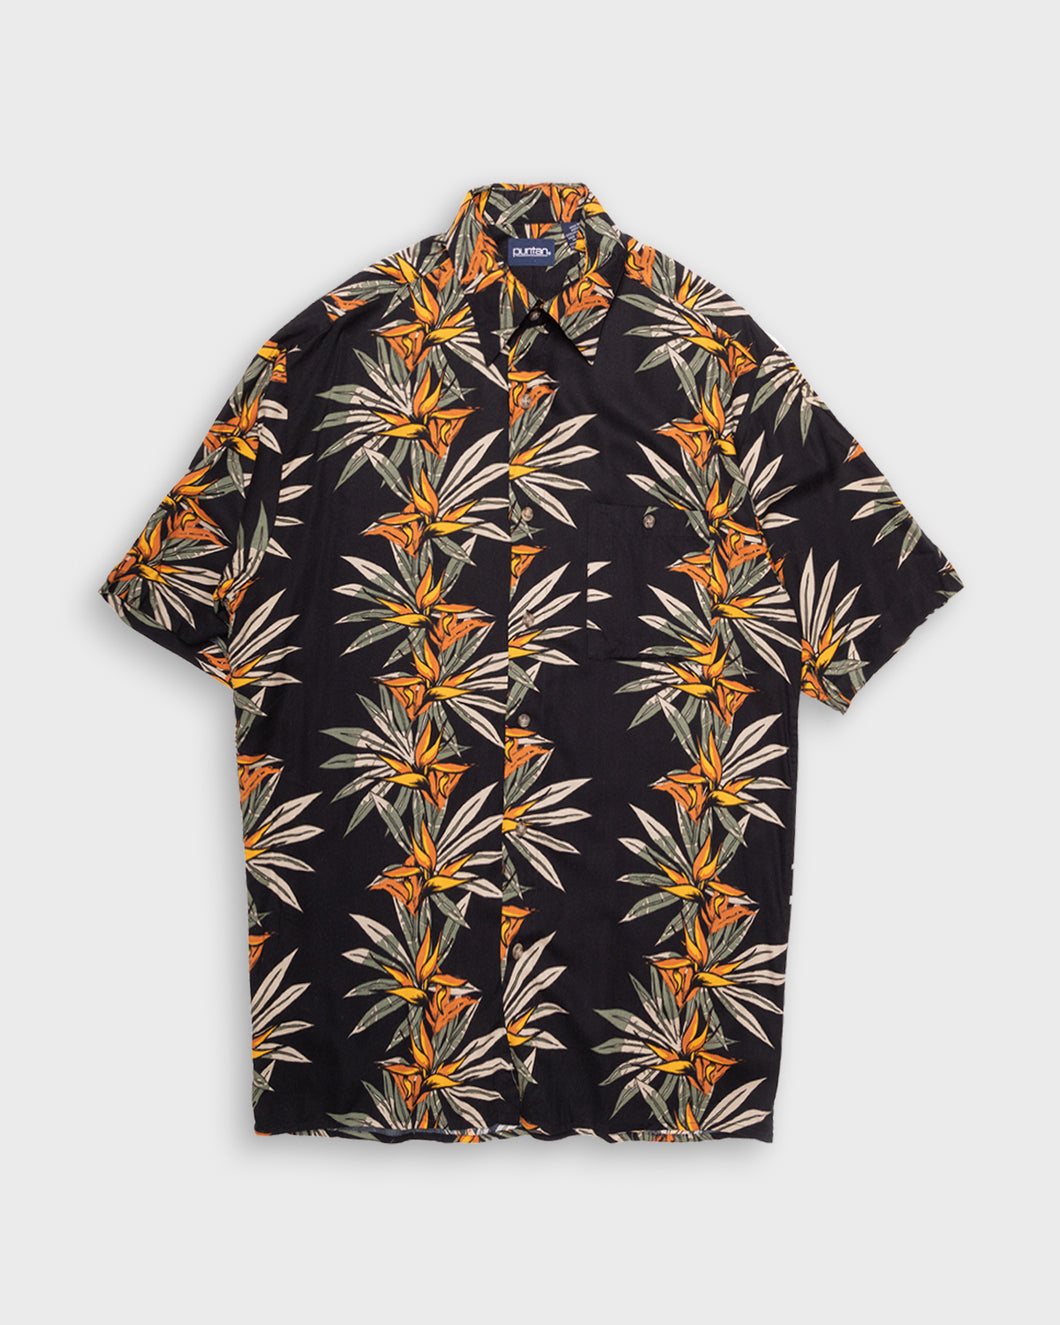 Bird of paradise printed shirt